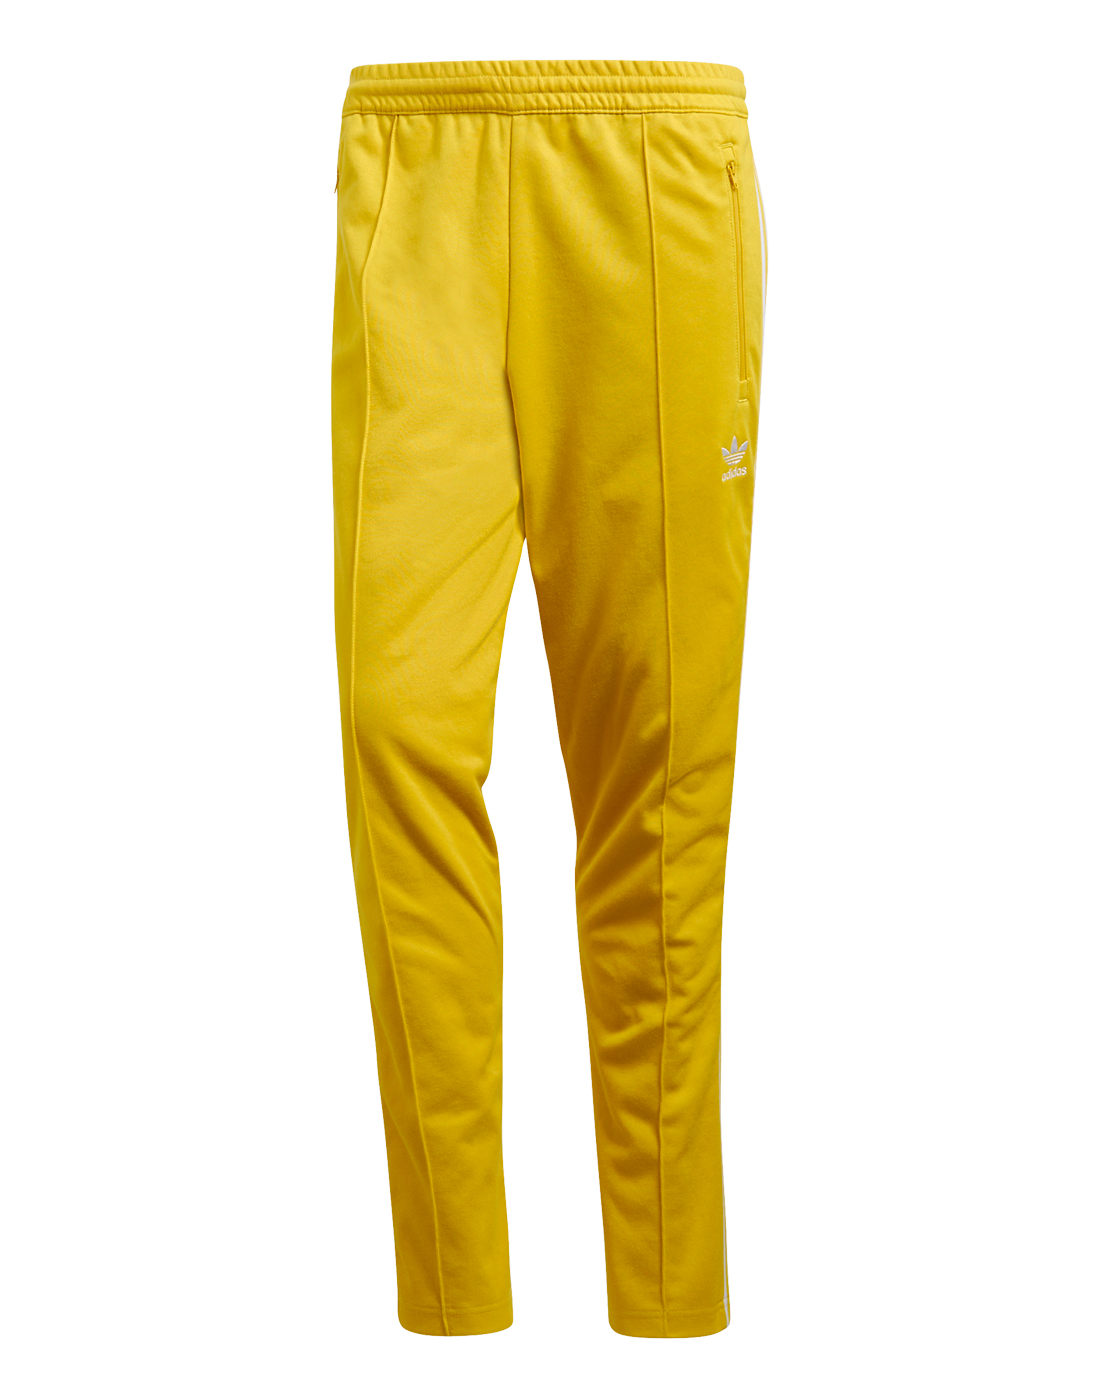 mens yellow adidas pants